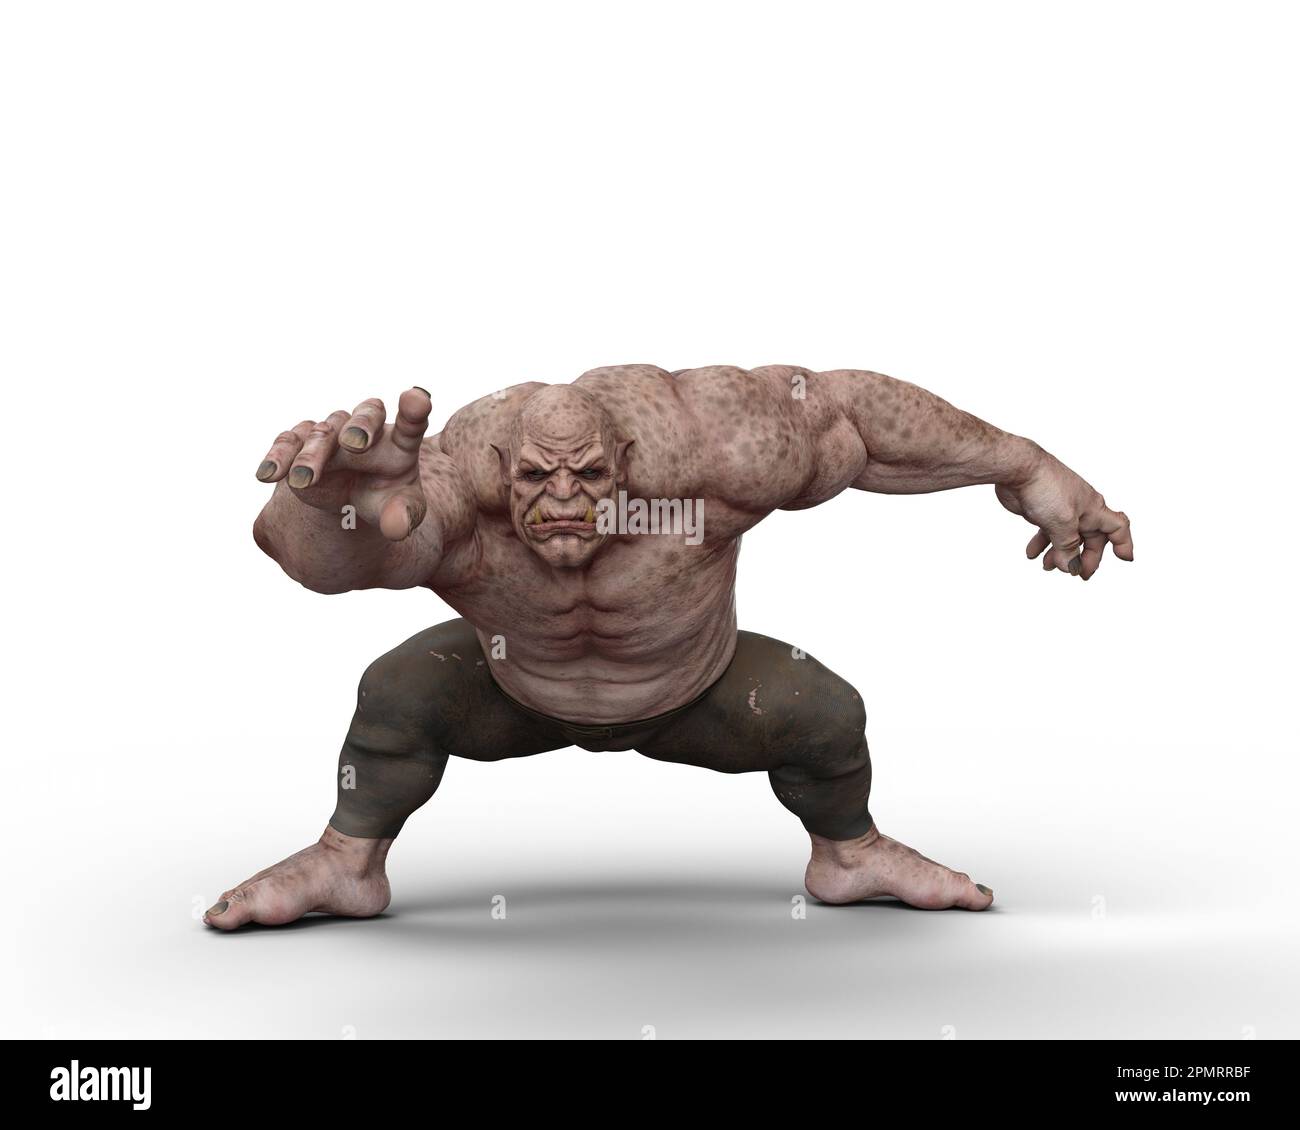 Une créature fantaisiste d'ogre géante en posture accroupante. 3D illustration isolée sur fond blanc. Banque D'Images